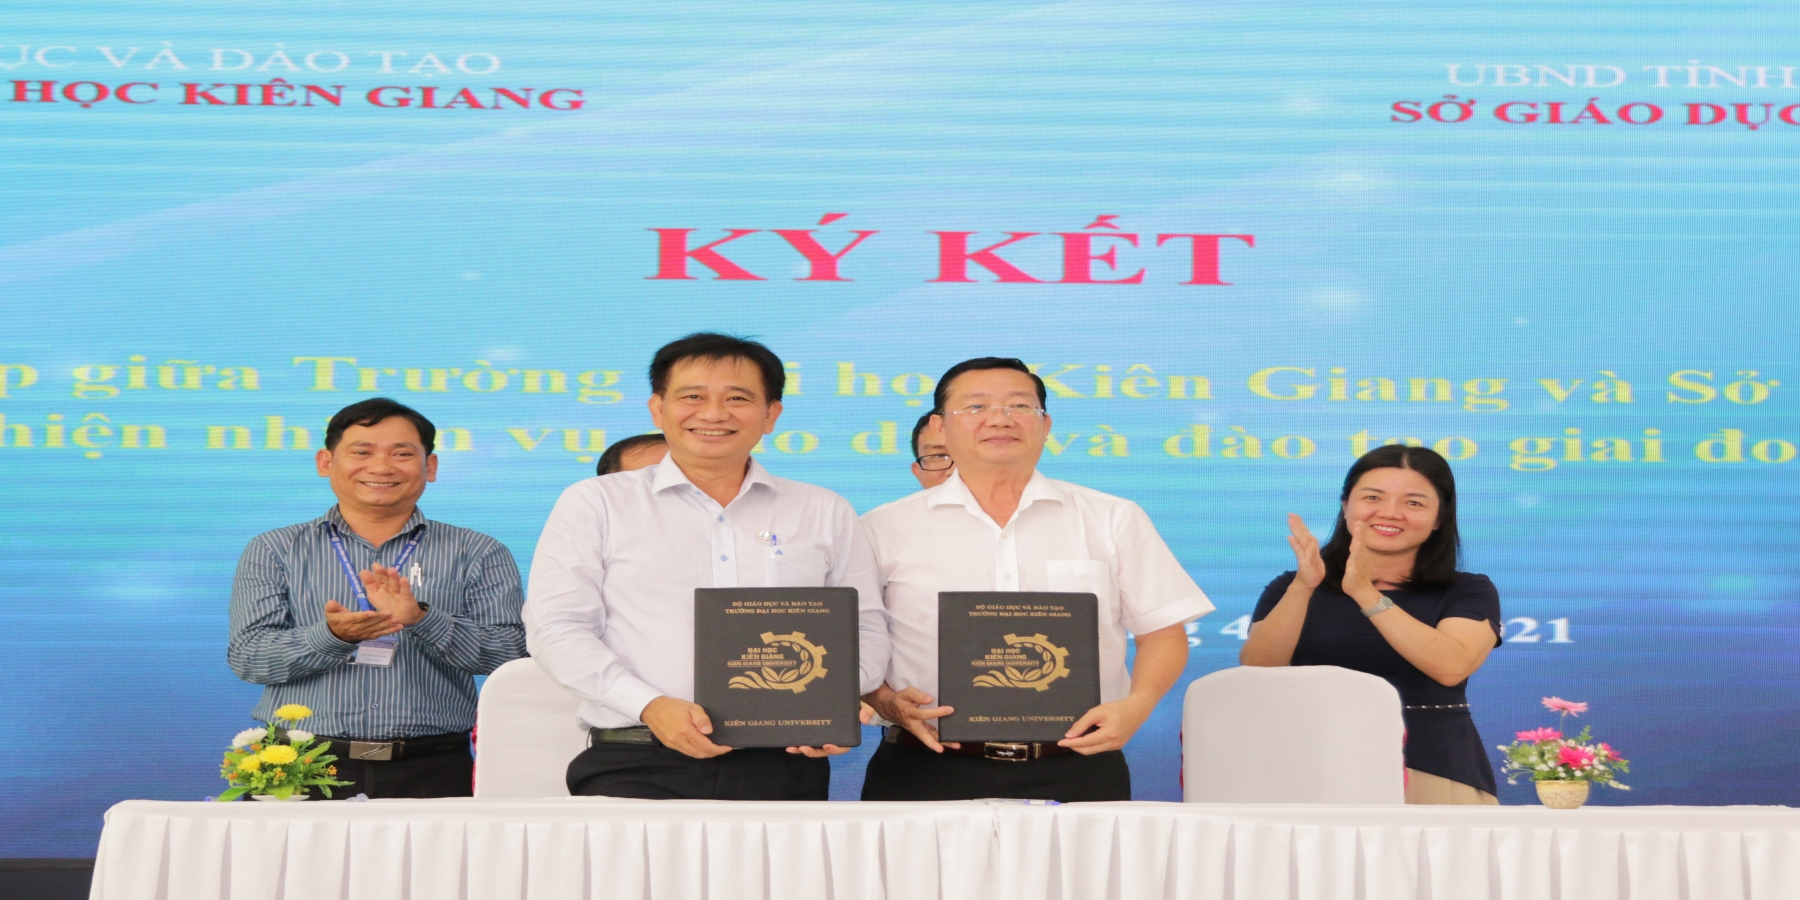  Phối hợp cùng Sở Giáo dục & Đào tạo tỉnh Kiên Giang nâng cao chất lượng giảng dạy, nghiên cứu, ứng dụng KHCN cho học sinh THPT